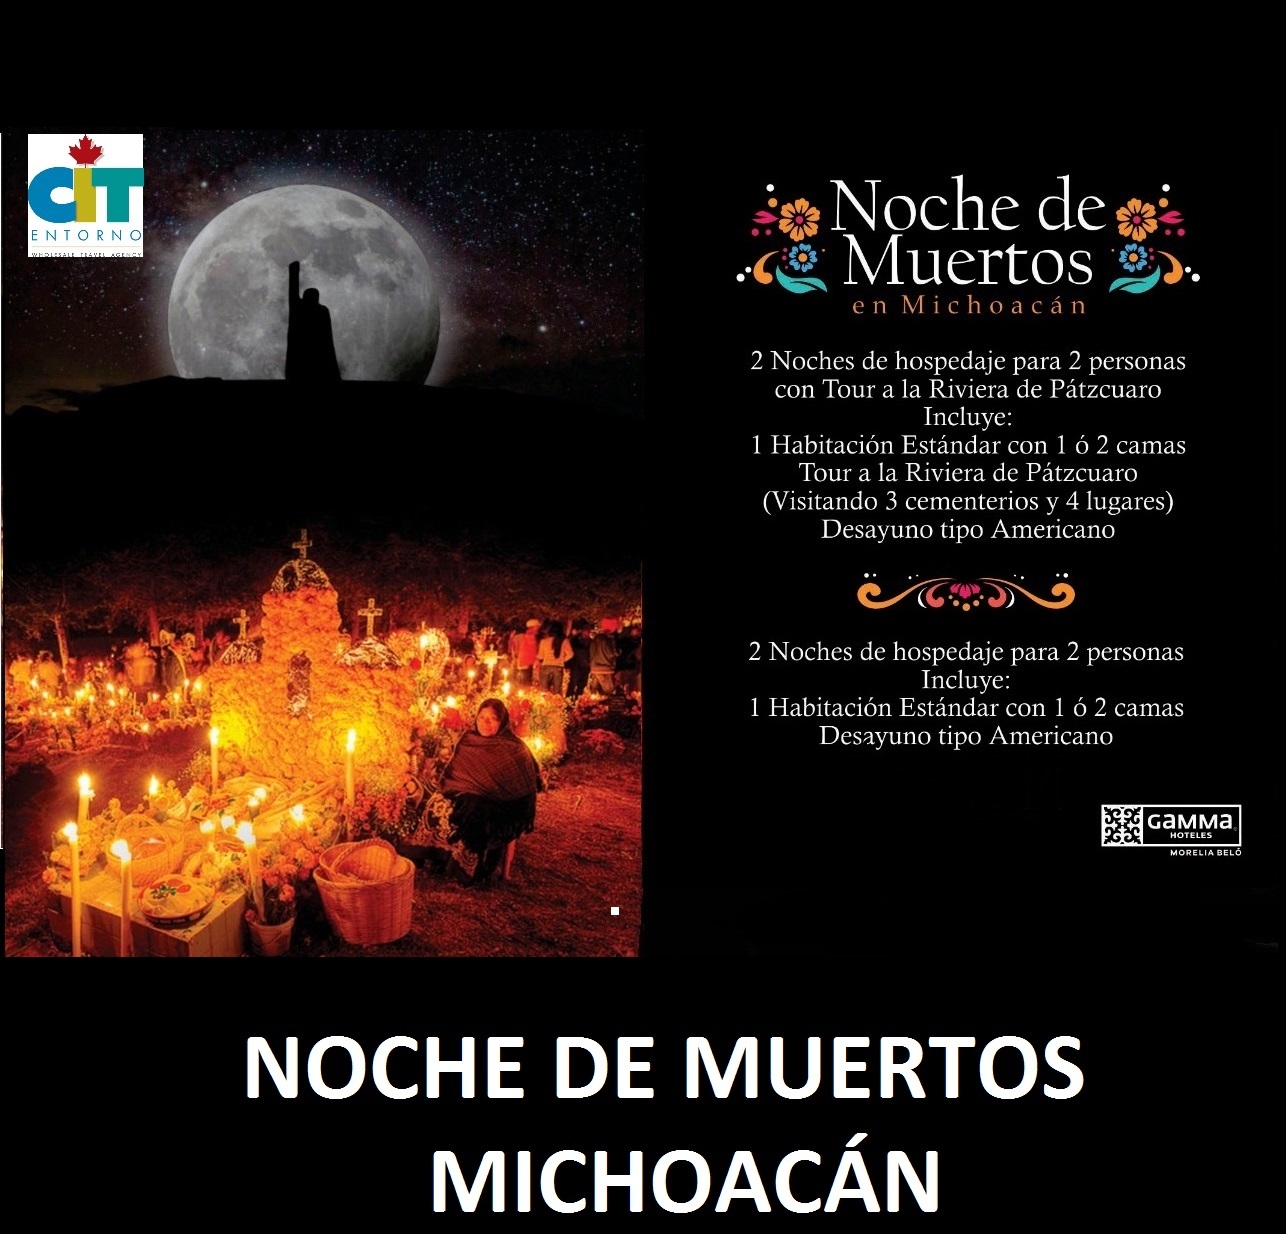 <span style="font-weight: bold;">Michoacán/ Día de muertos</span> 